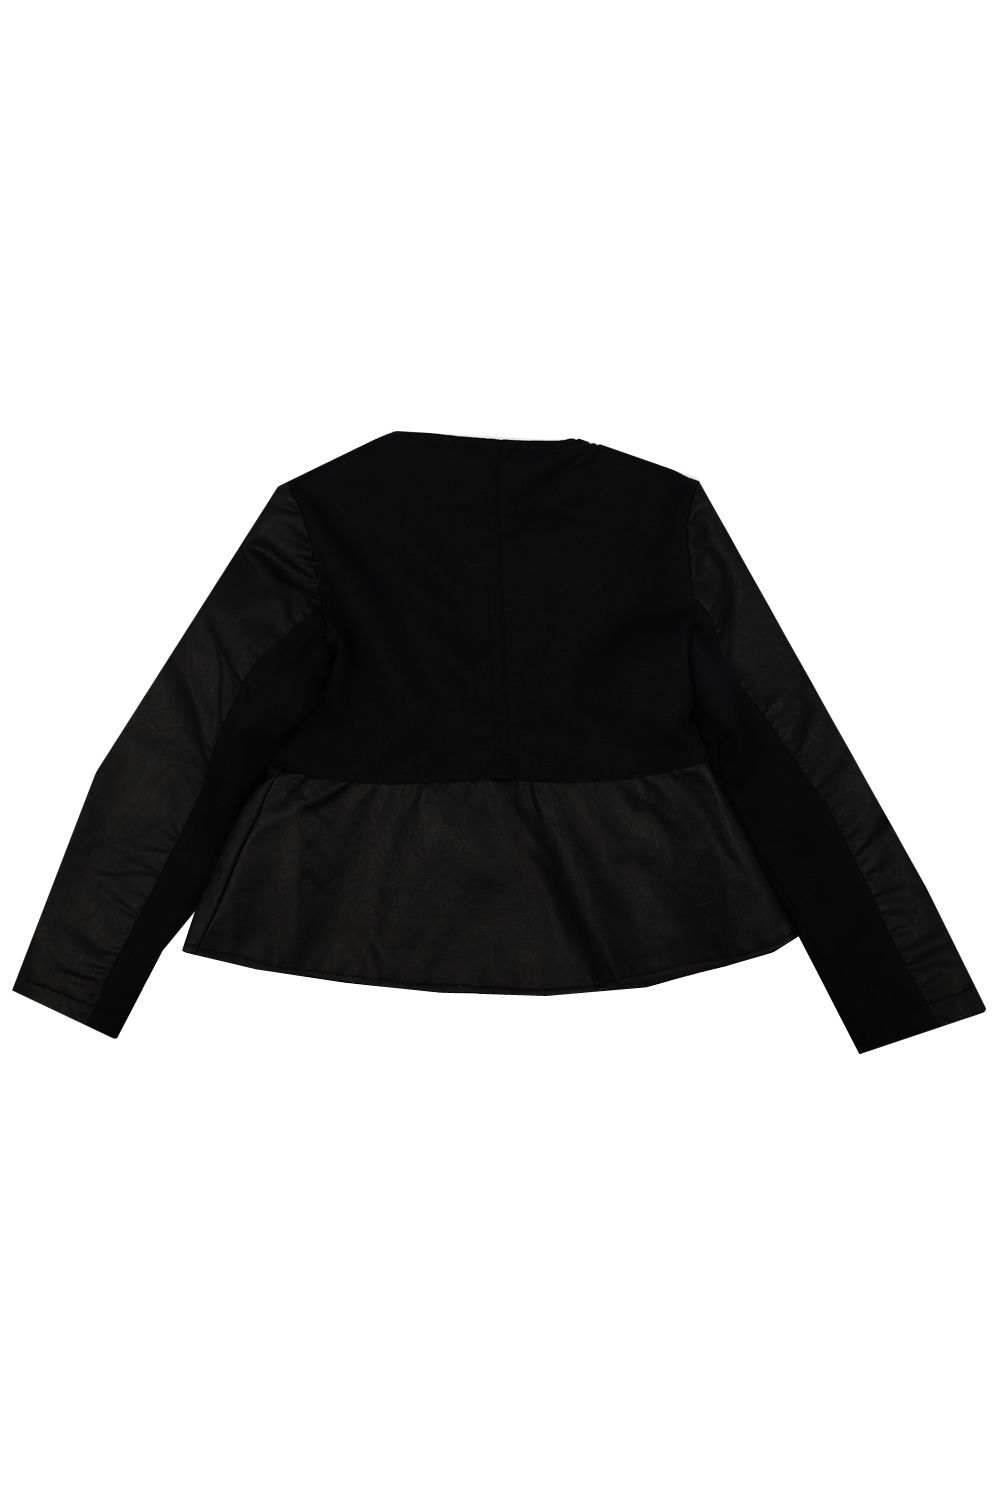 Куртка Y-clu', размер 104, цвет черный YB12660 - фото 2